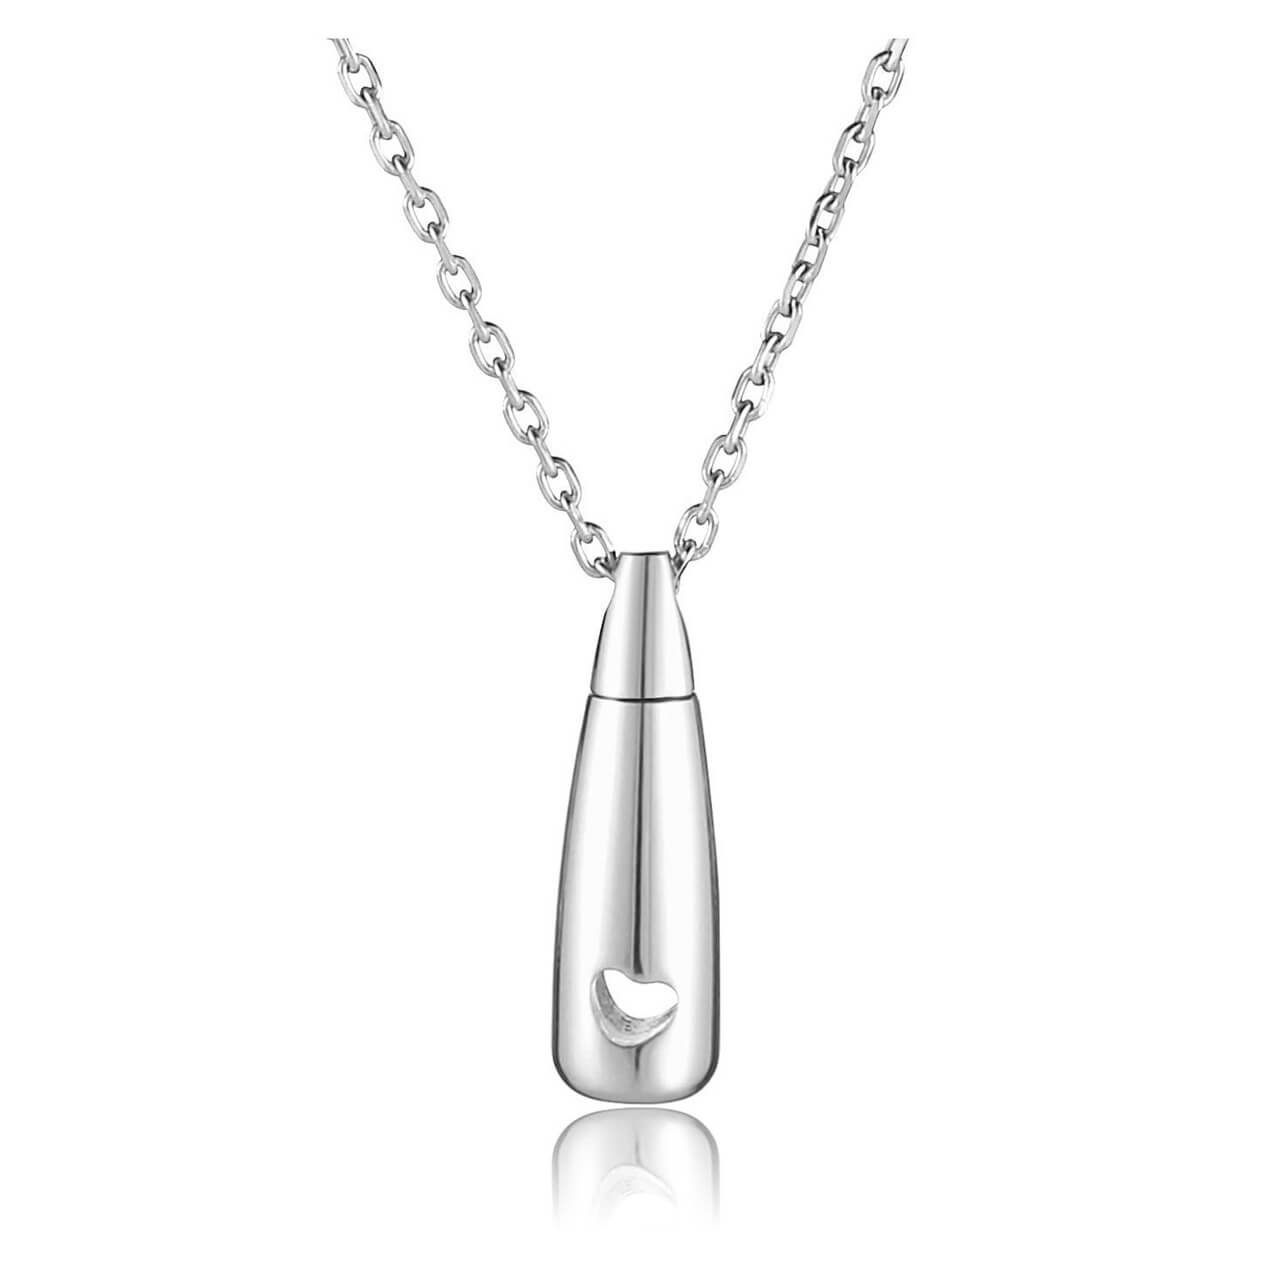 Teardrop memorial necklace - Lavish Lockets